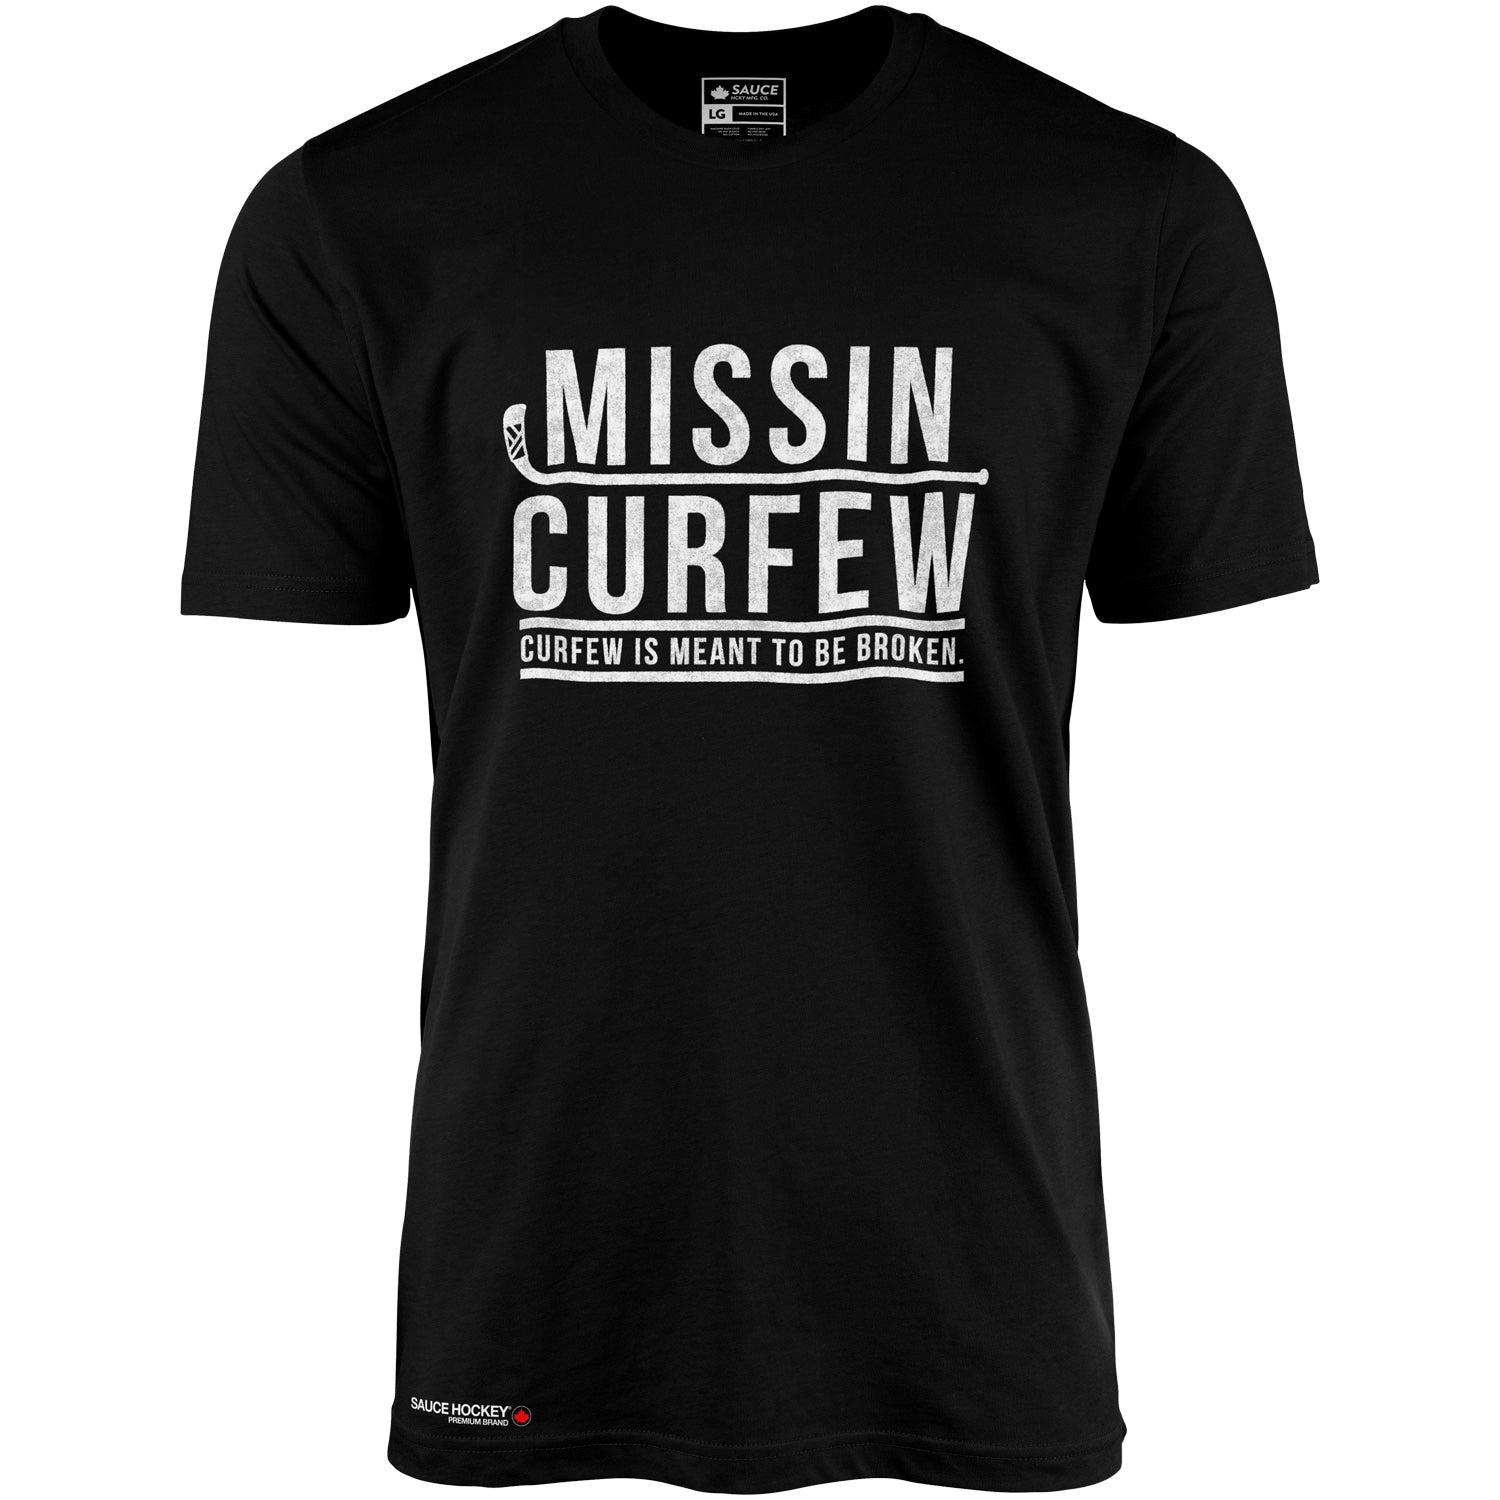 MISSIN CURFEW - BLACK